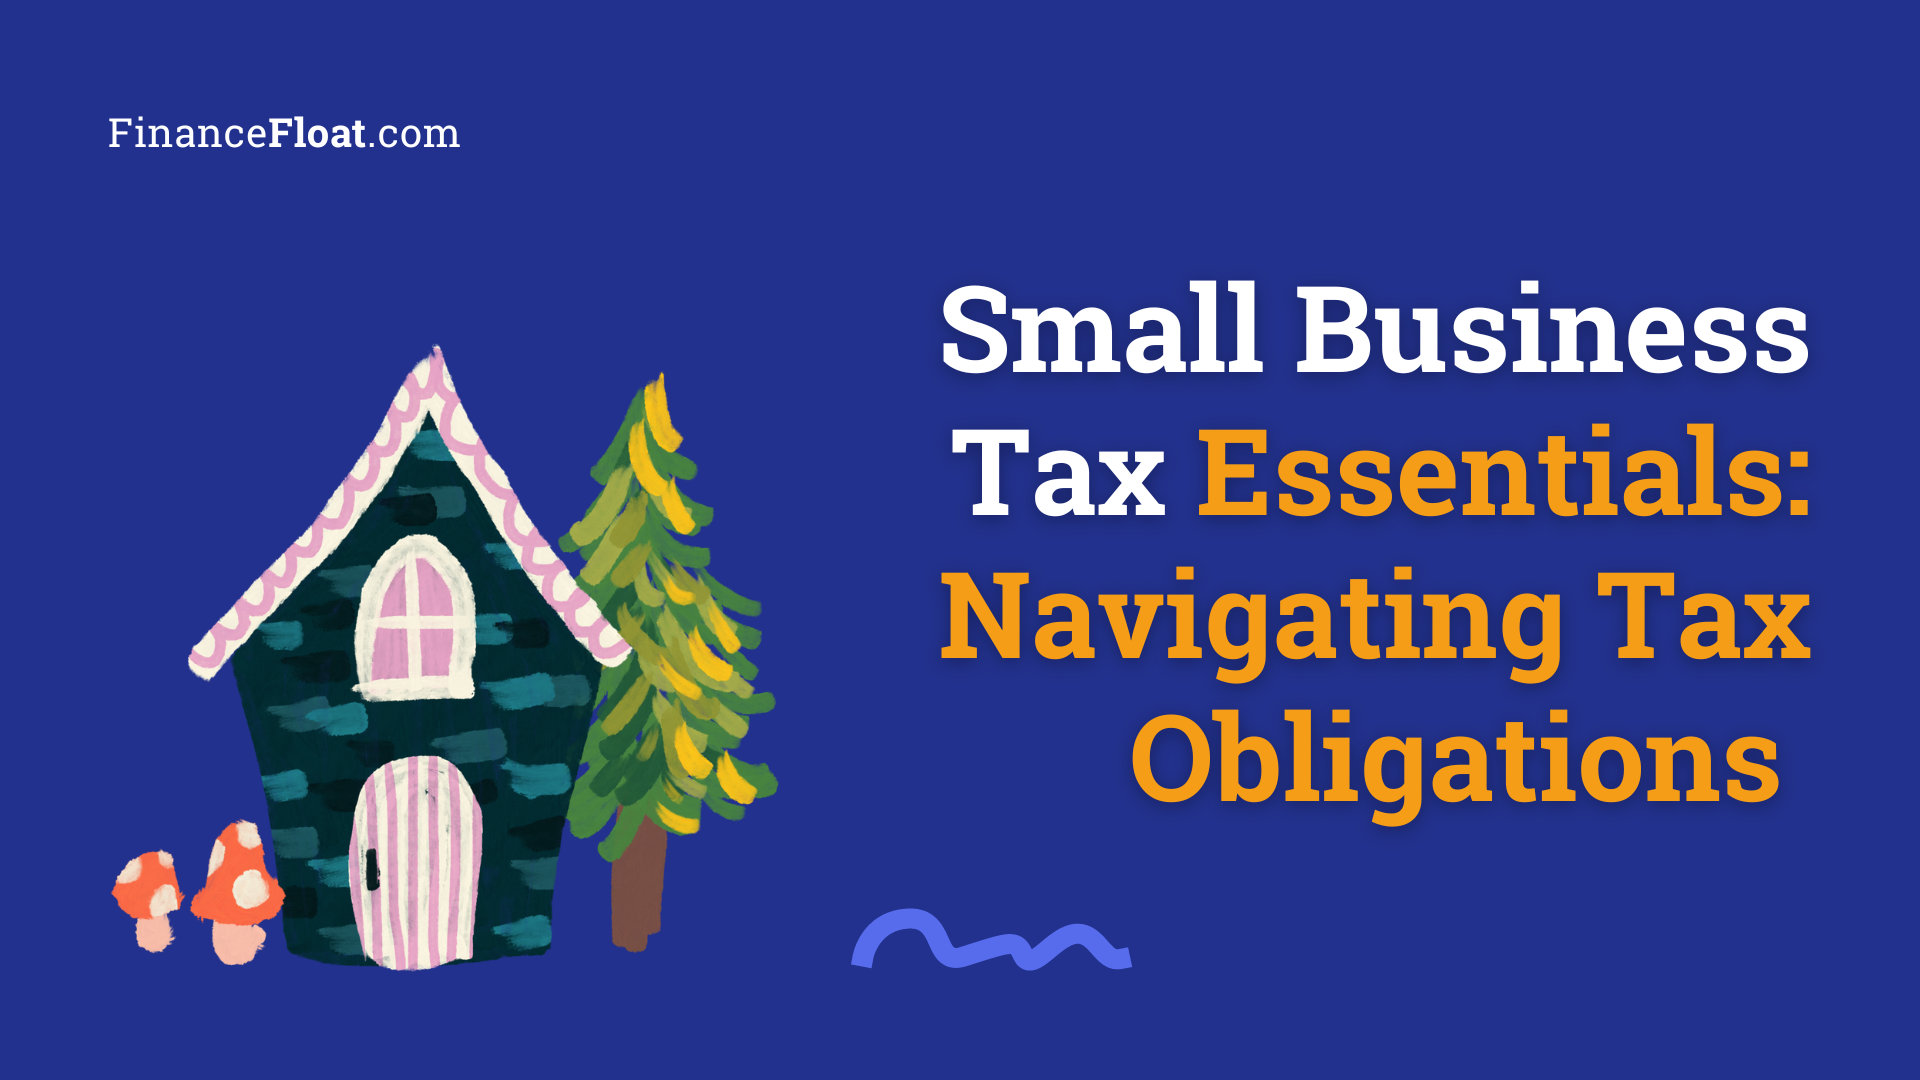 Small Business Tax Essentials Navigating Tax Obligations